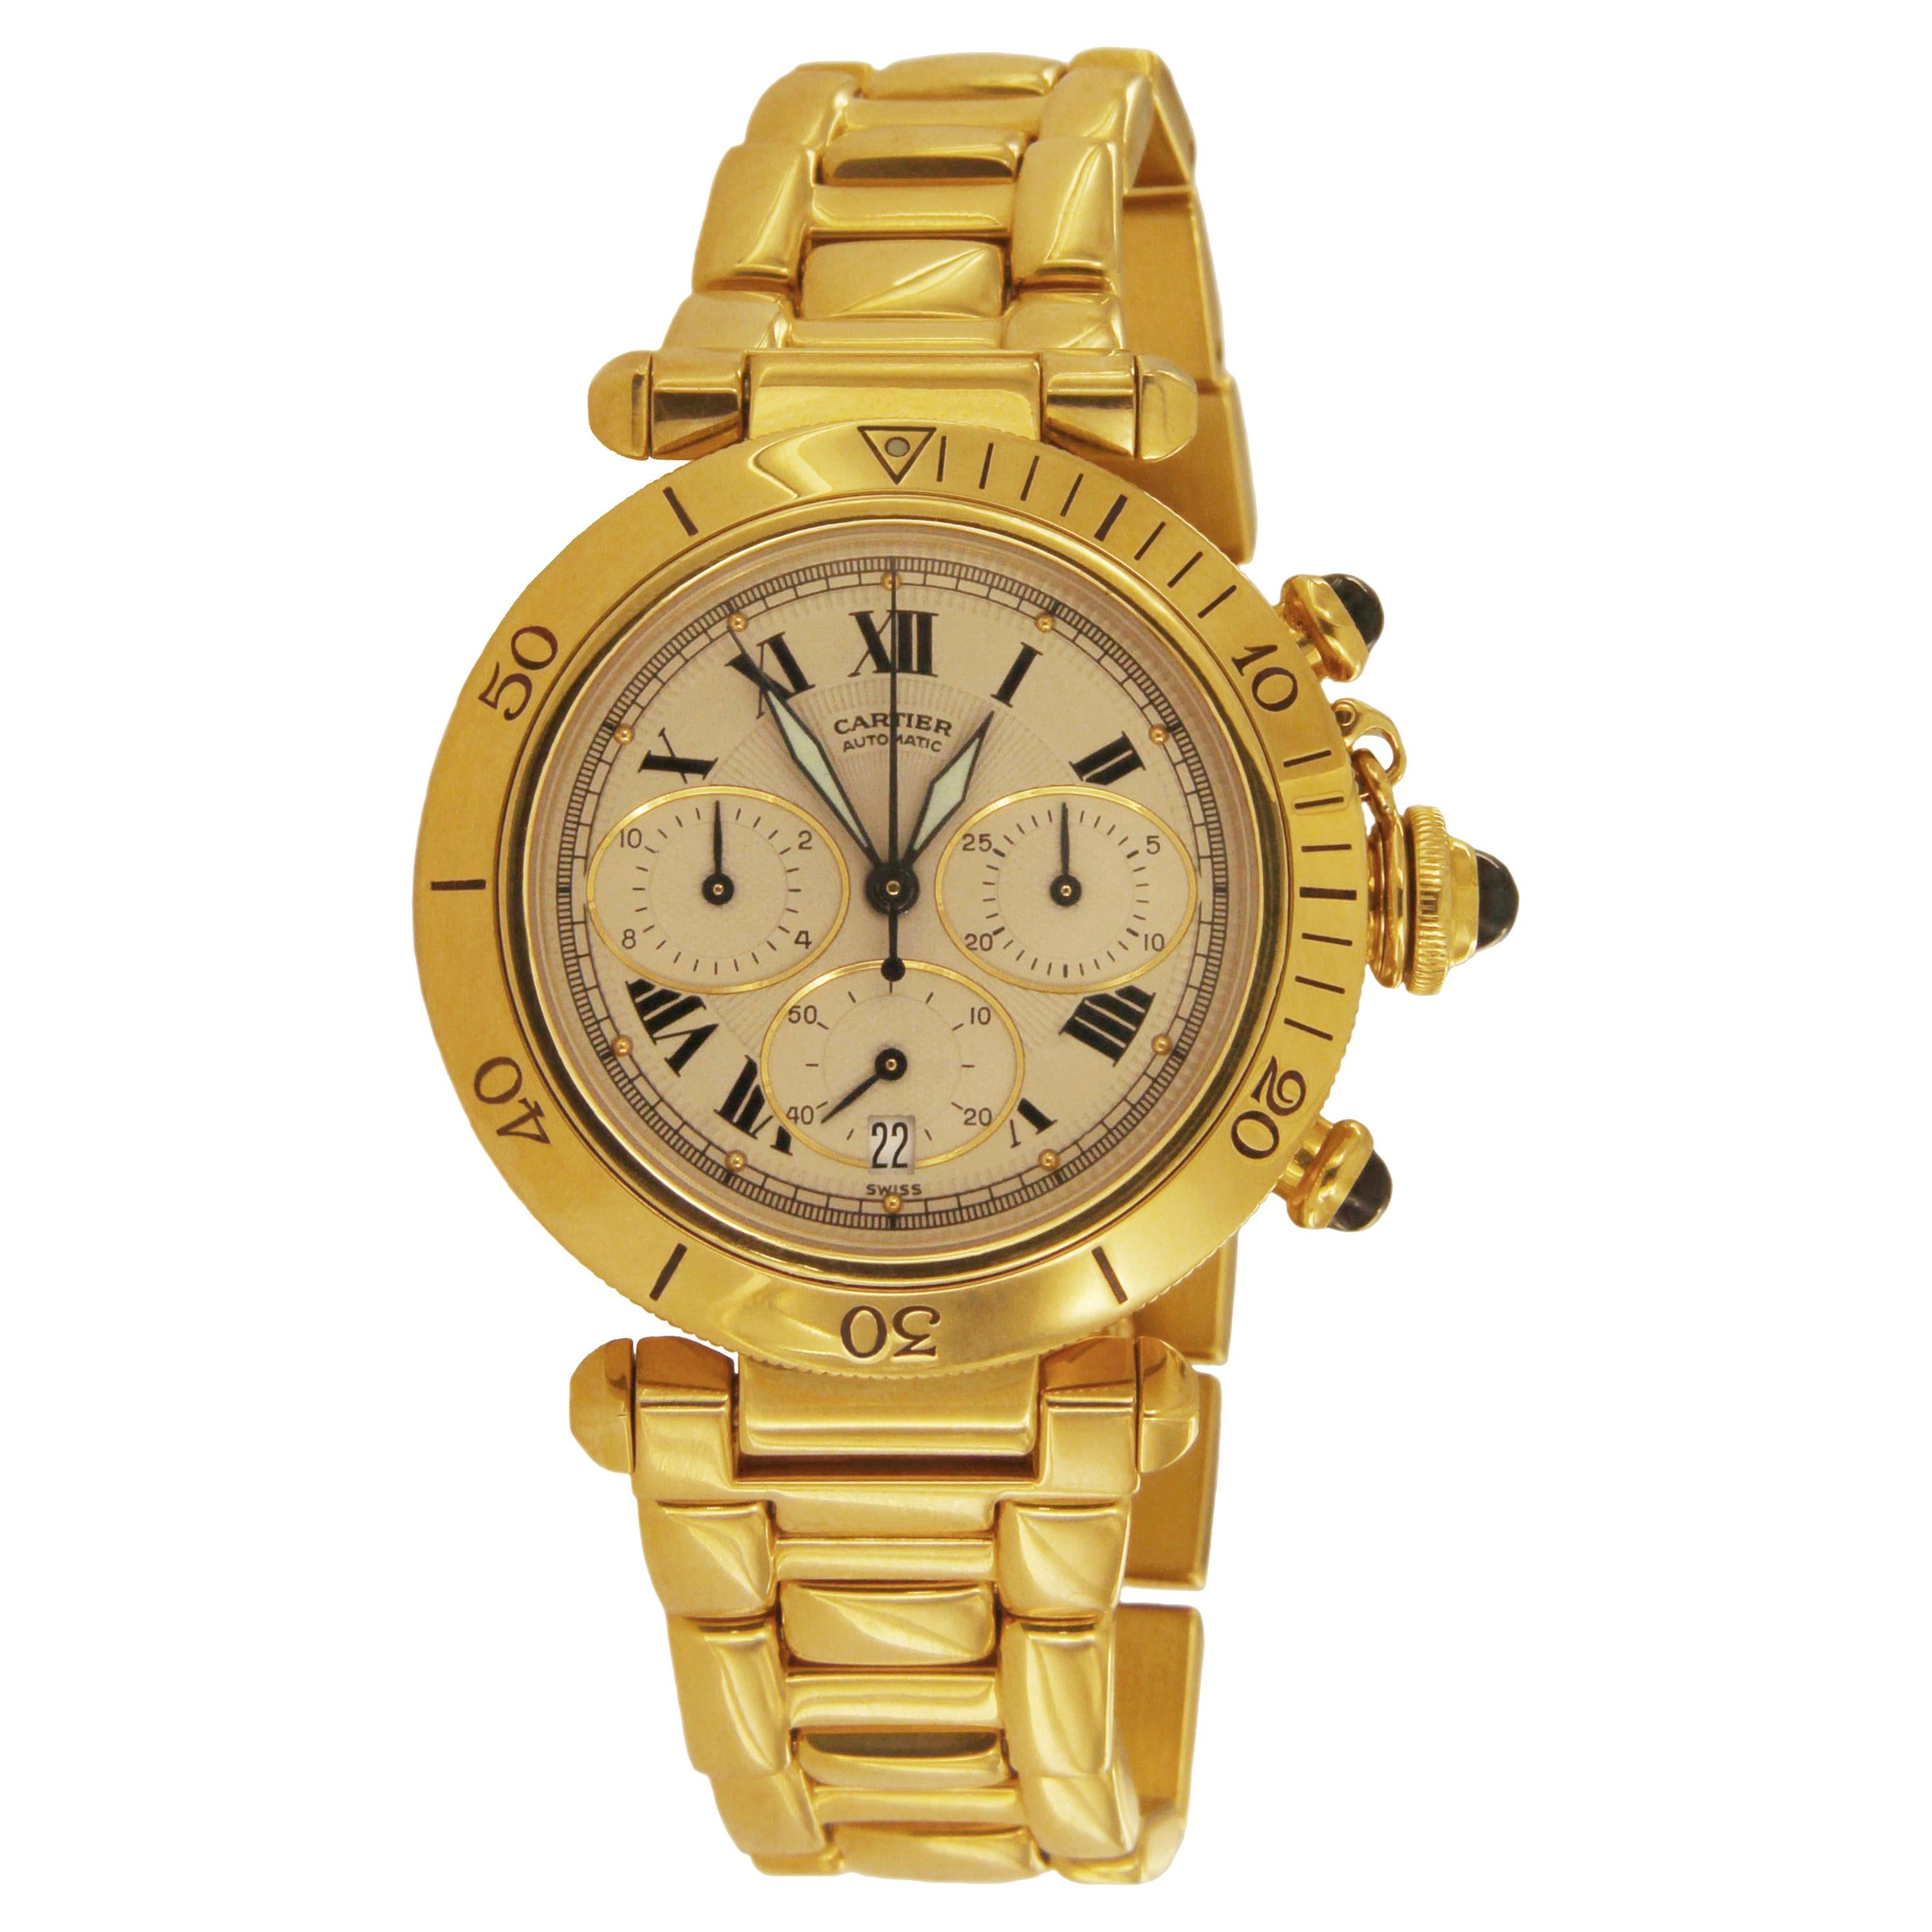 Cartier Pasha Chrono Yellow Gold Watch 2111 1